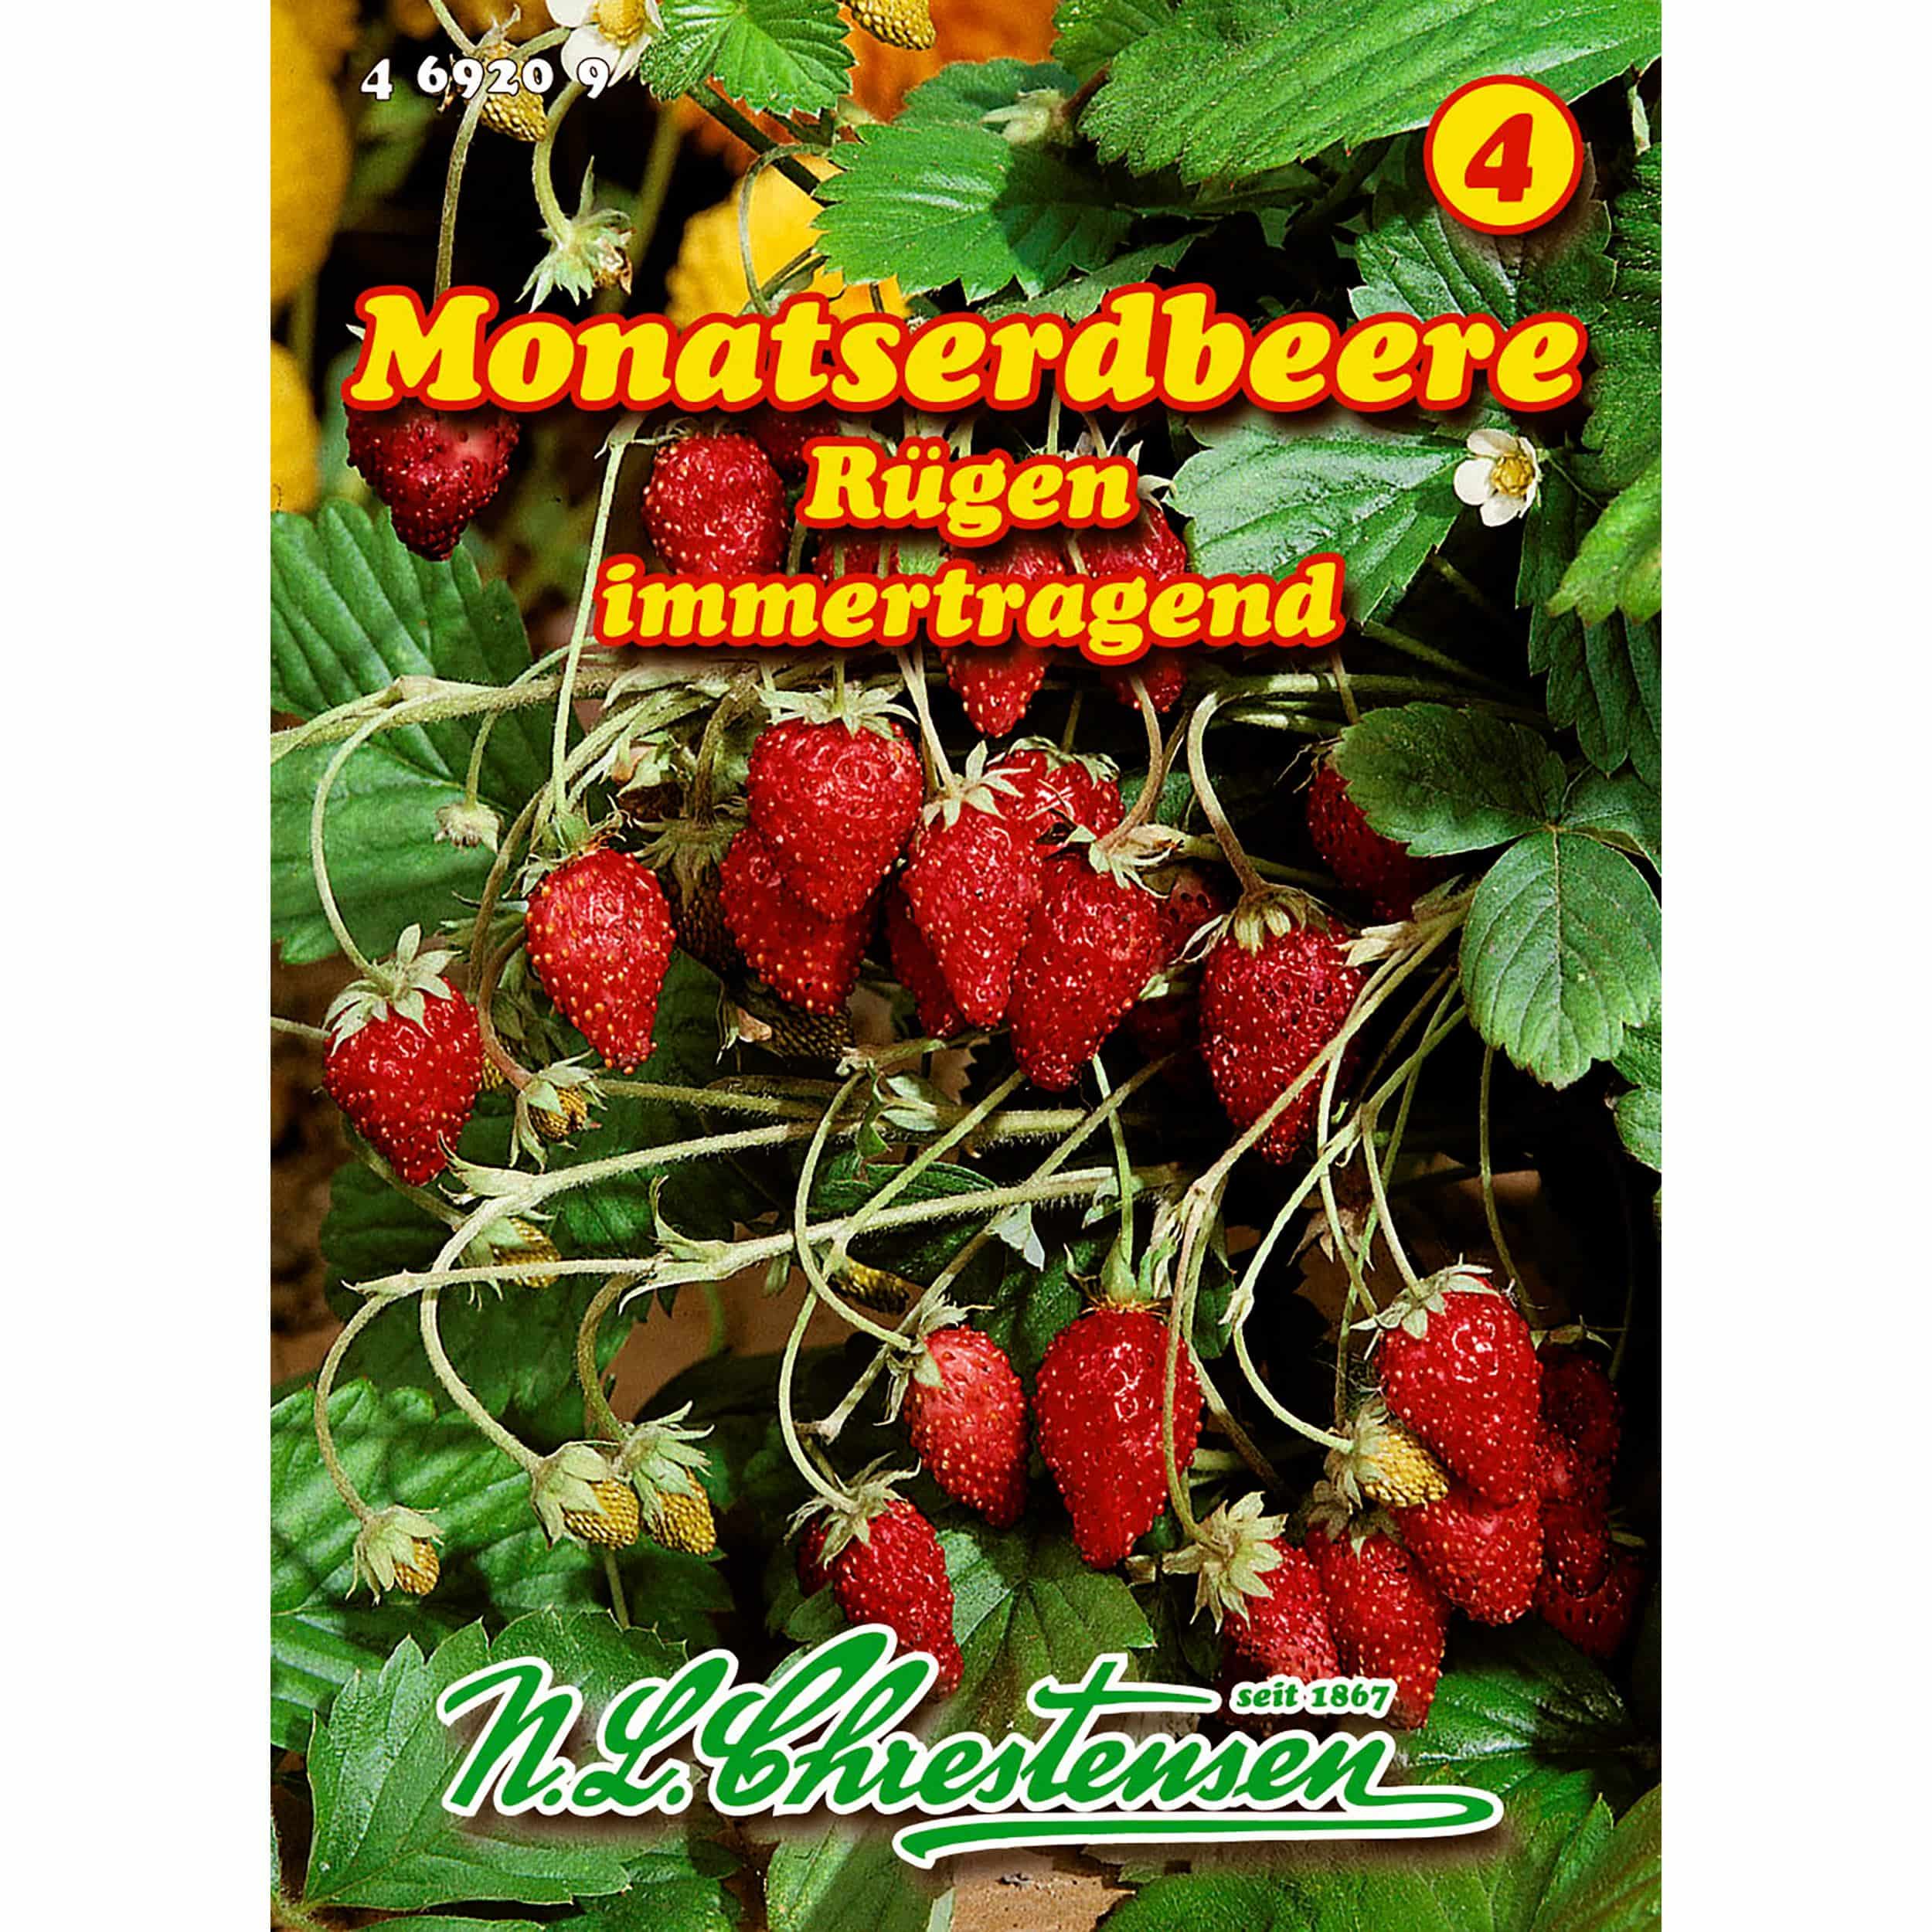 Monatserdbeere, Rügen